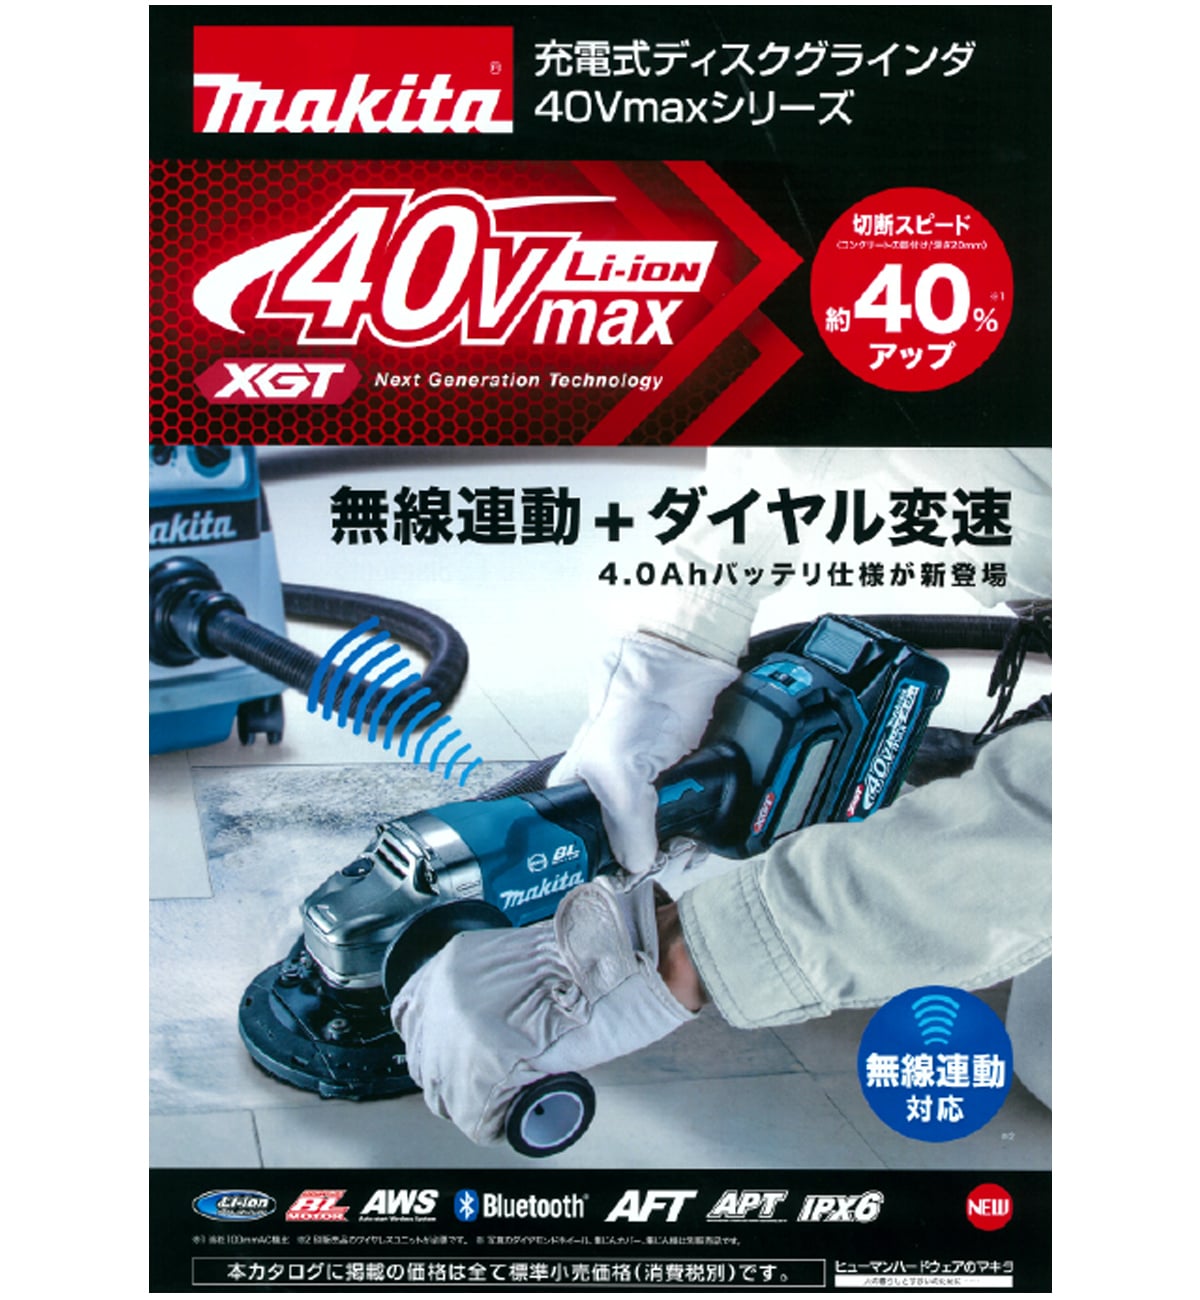 マキタ GA019GRMX 40Vmax充電式ディスクグラインダ100mm ウエダ金物【公式サイト】